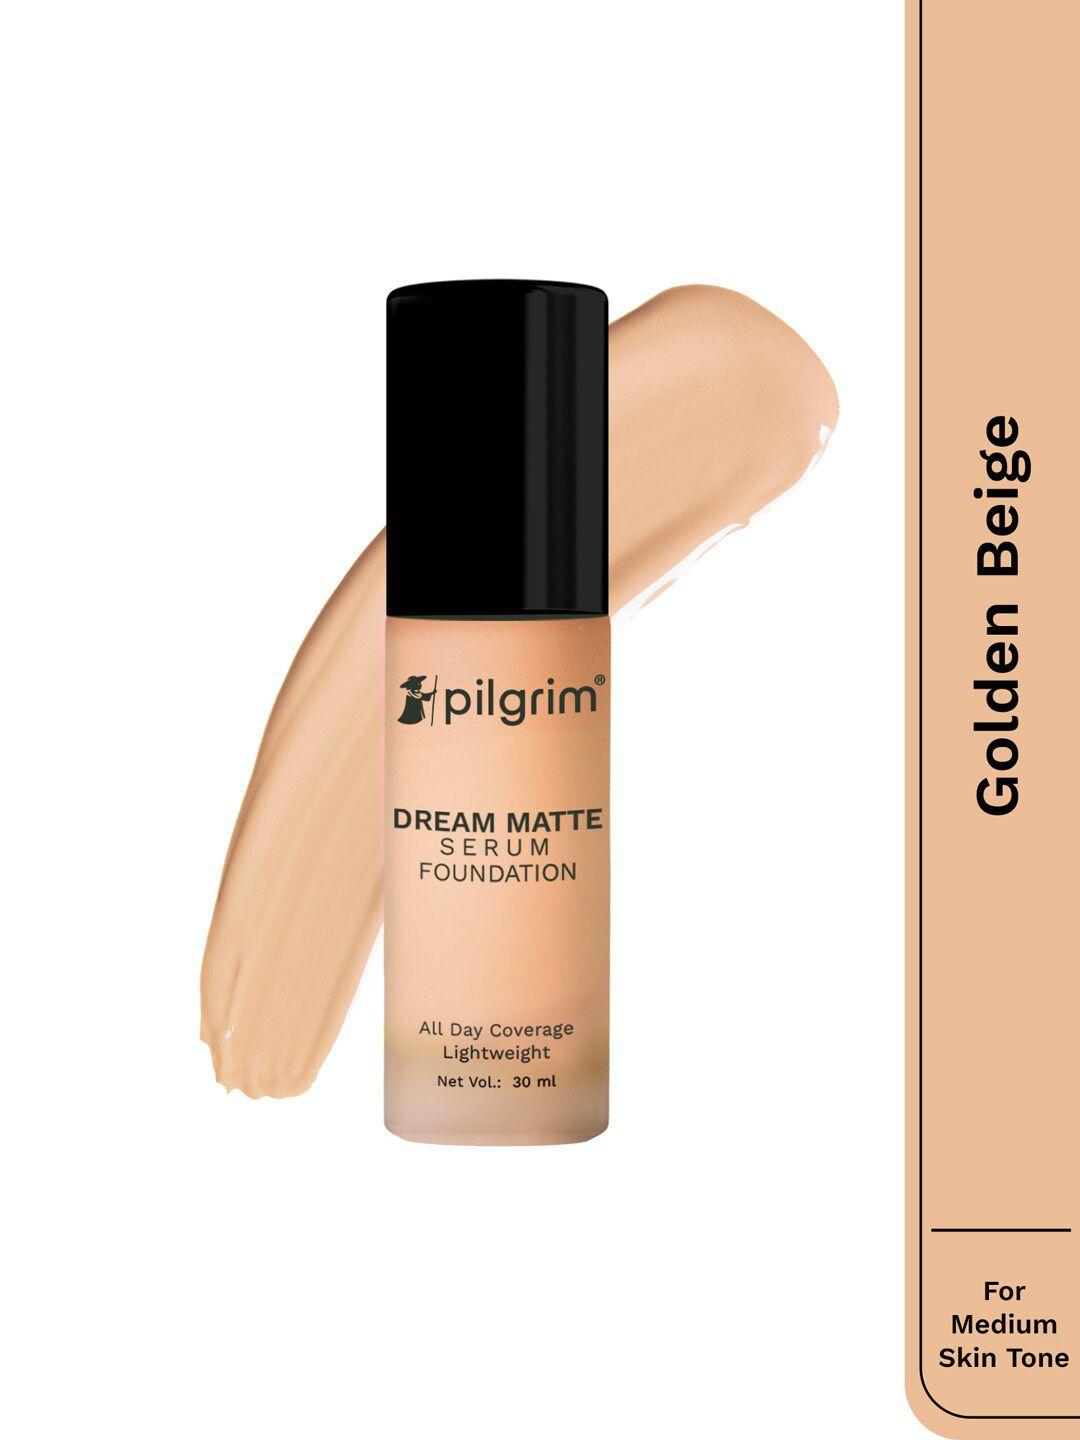 pilgrim dream matte serum liquid foundation - 30ml - golden beige 215